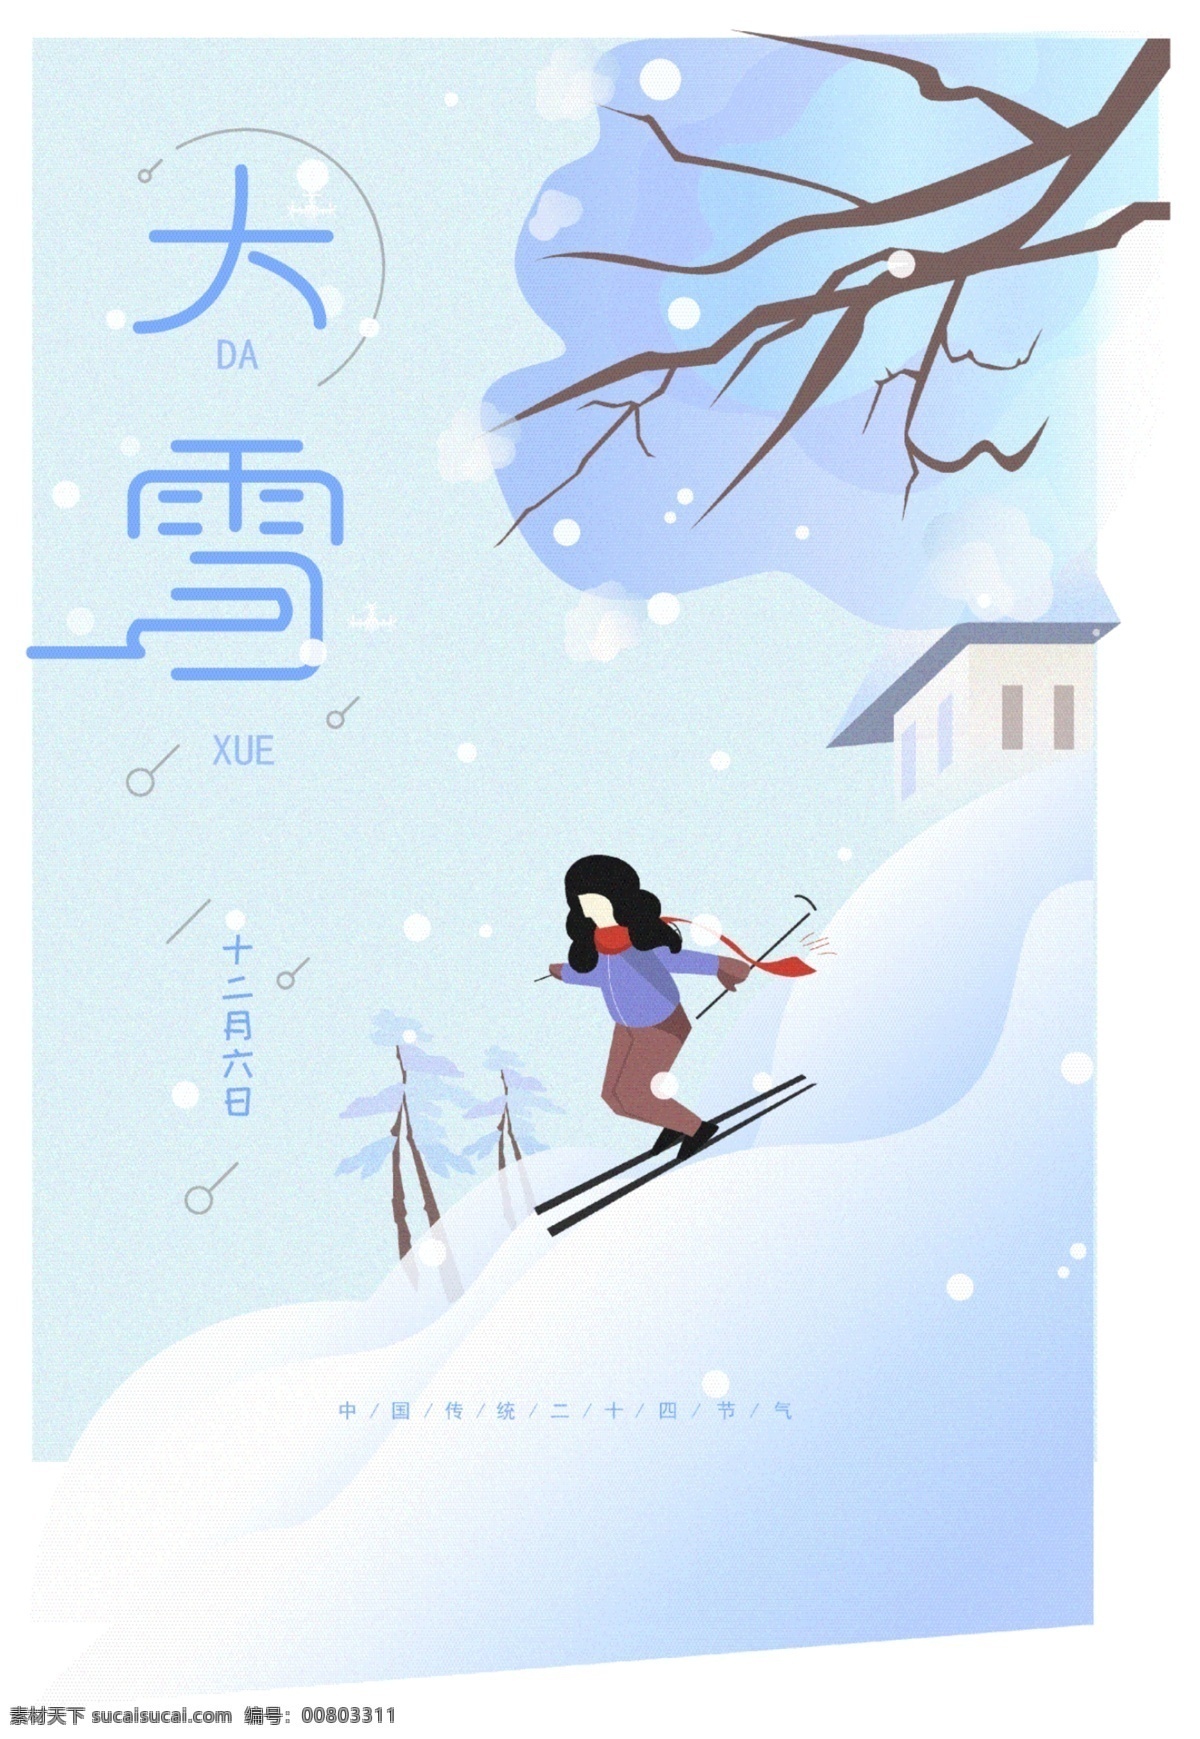 原创 手绘 滑雪 二十四节气 大雪 海报 大学 唯美 小清新